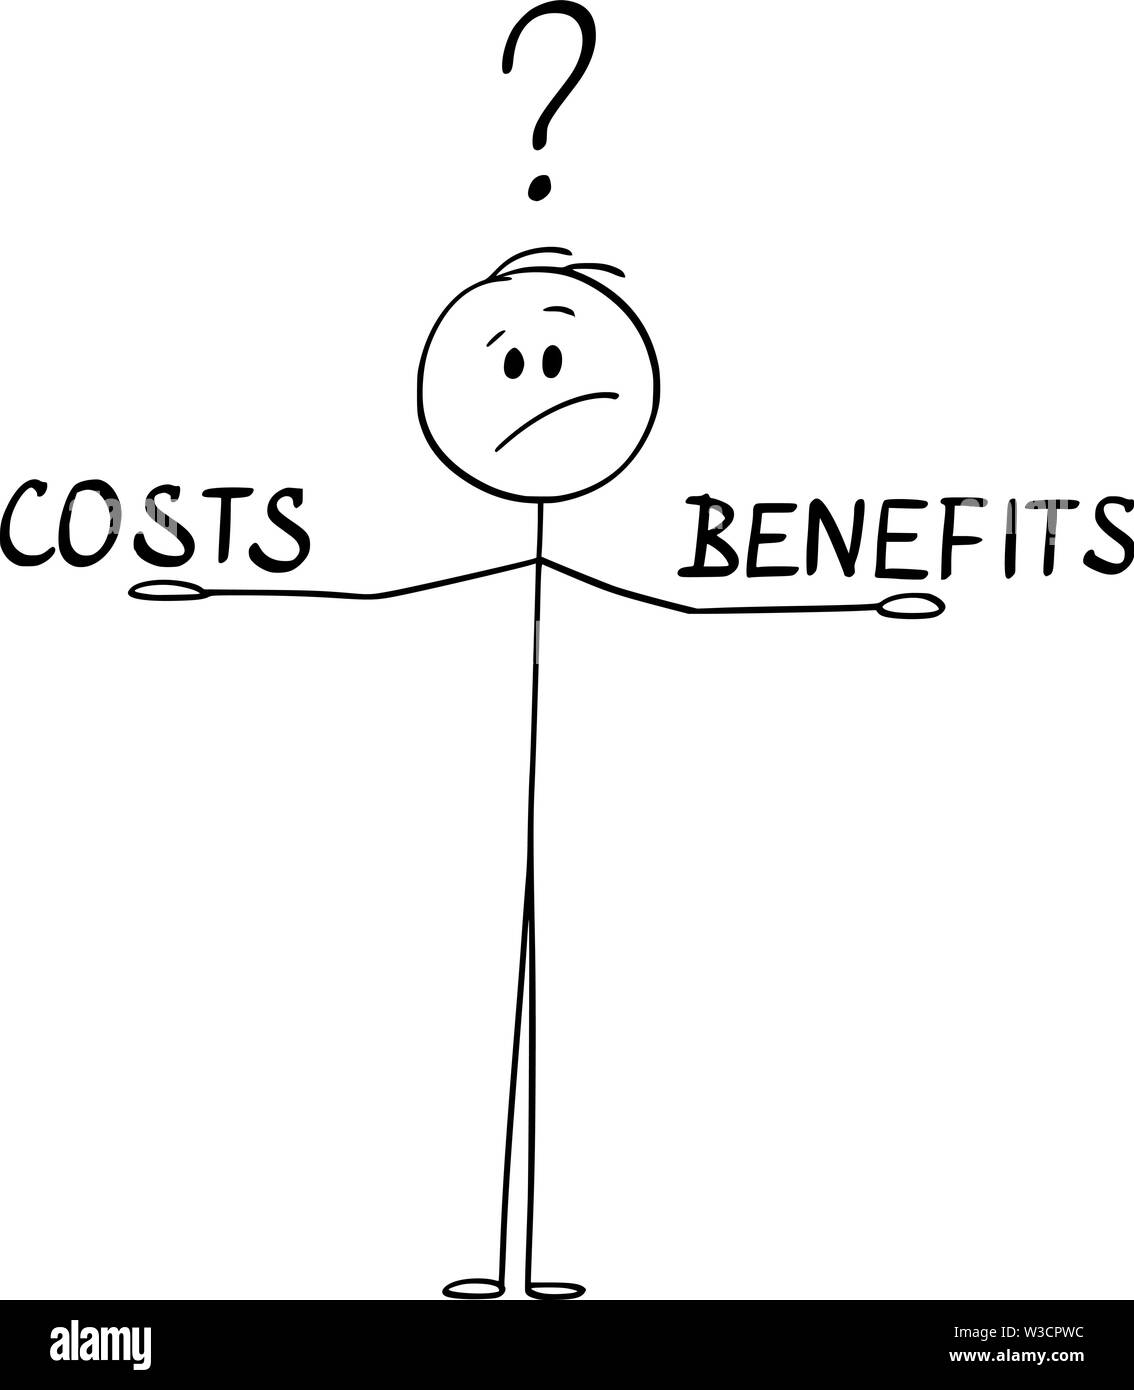 Vector cartoon stick figura disegno illustrazione concettuale dell'uomo o imprenditore bilanciamento dei costi e benefici nelle sue mani e pensando a. Illustrazione Vettoriale